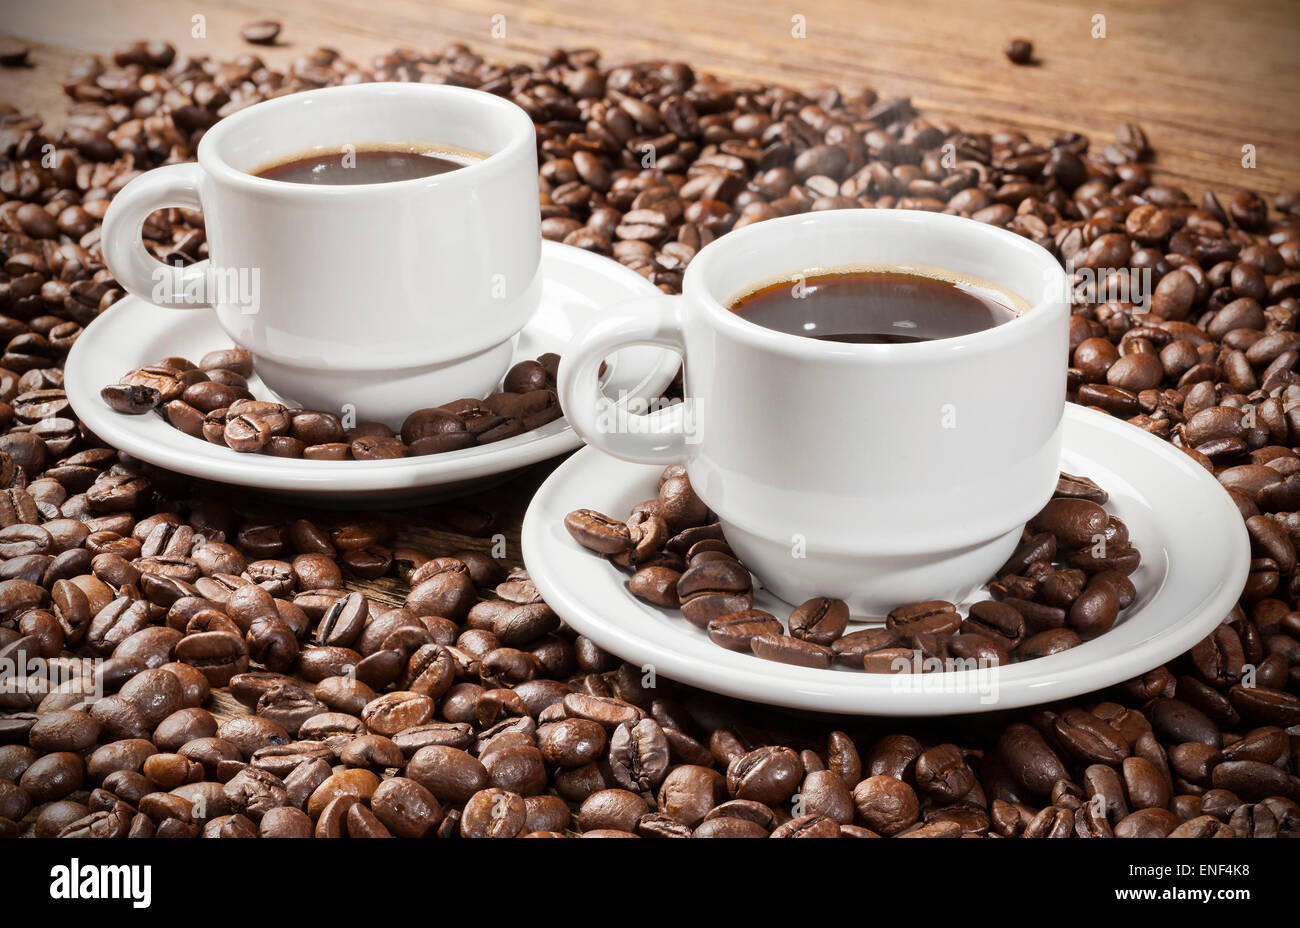 Deux tasses de café parmi les grains de café sur une table en bois. Banque D'Images